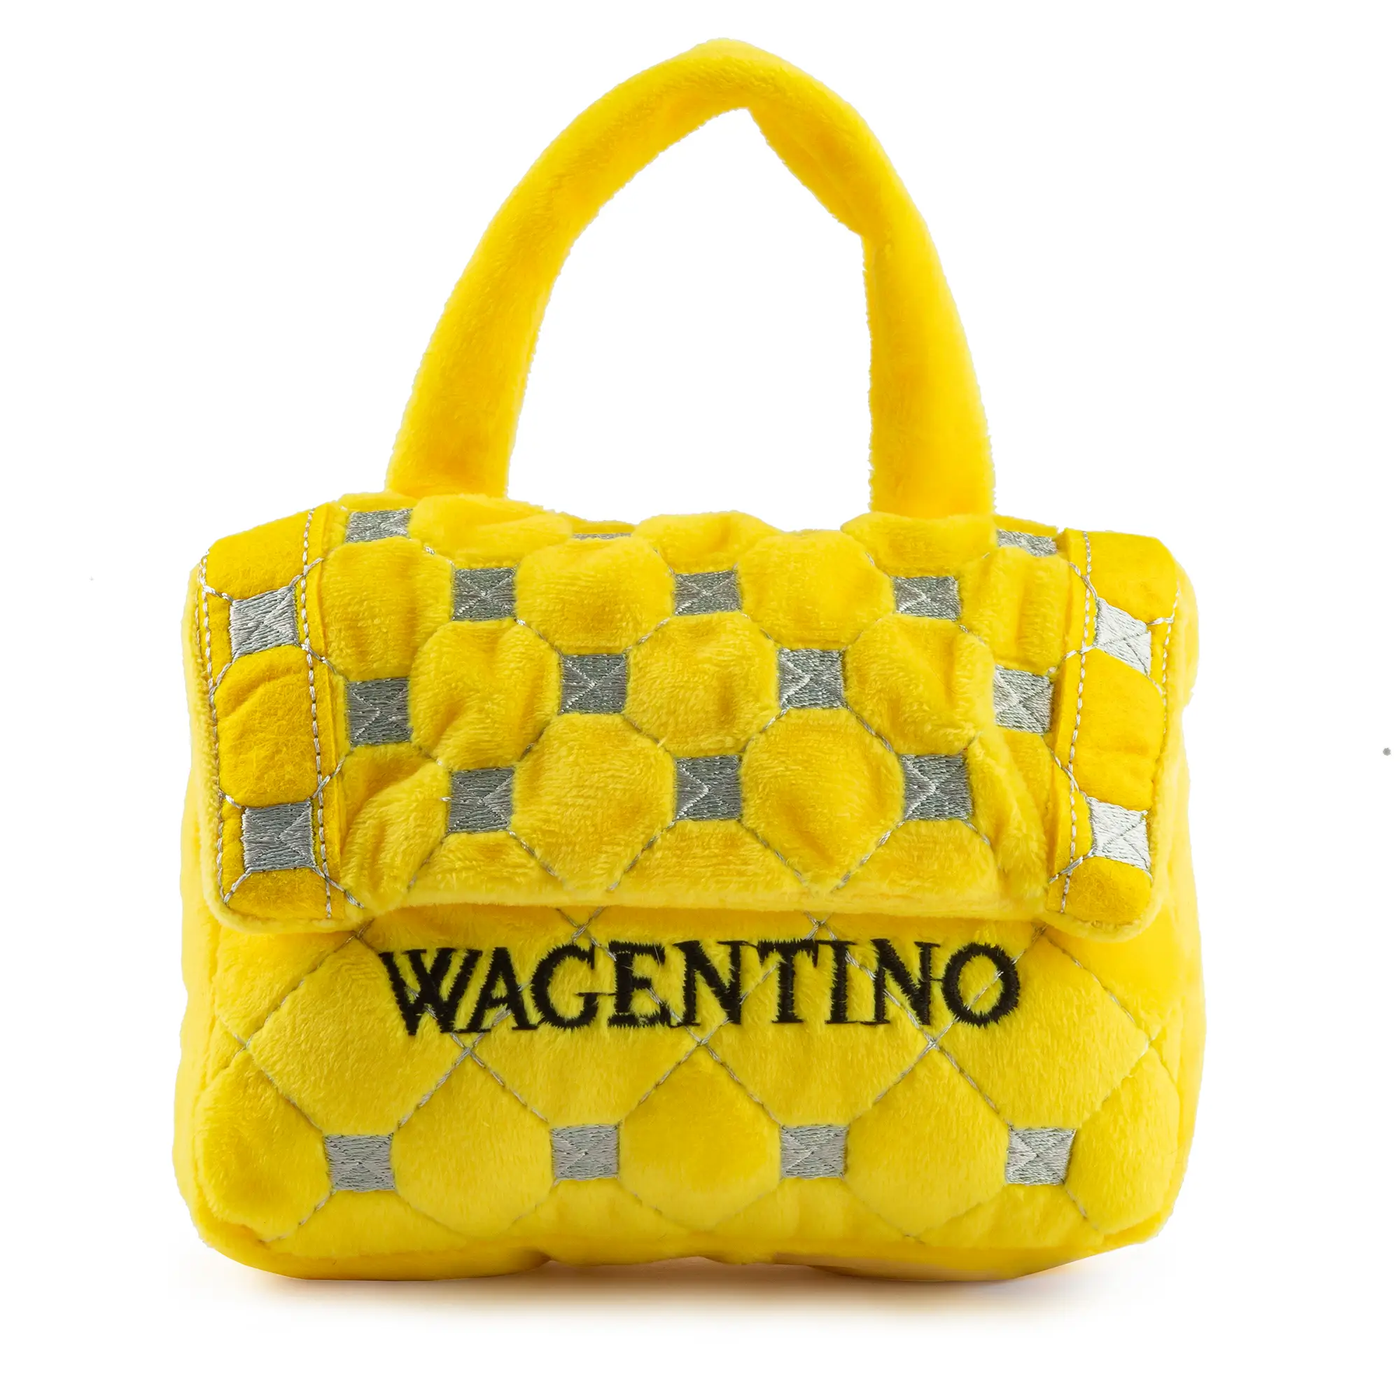 Wagentino Hangbag - Danshire Market and Design 